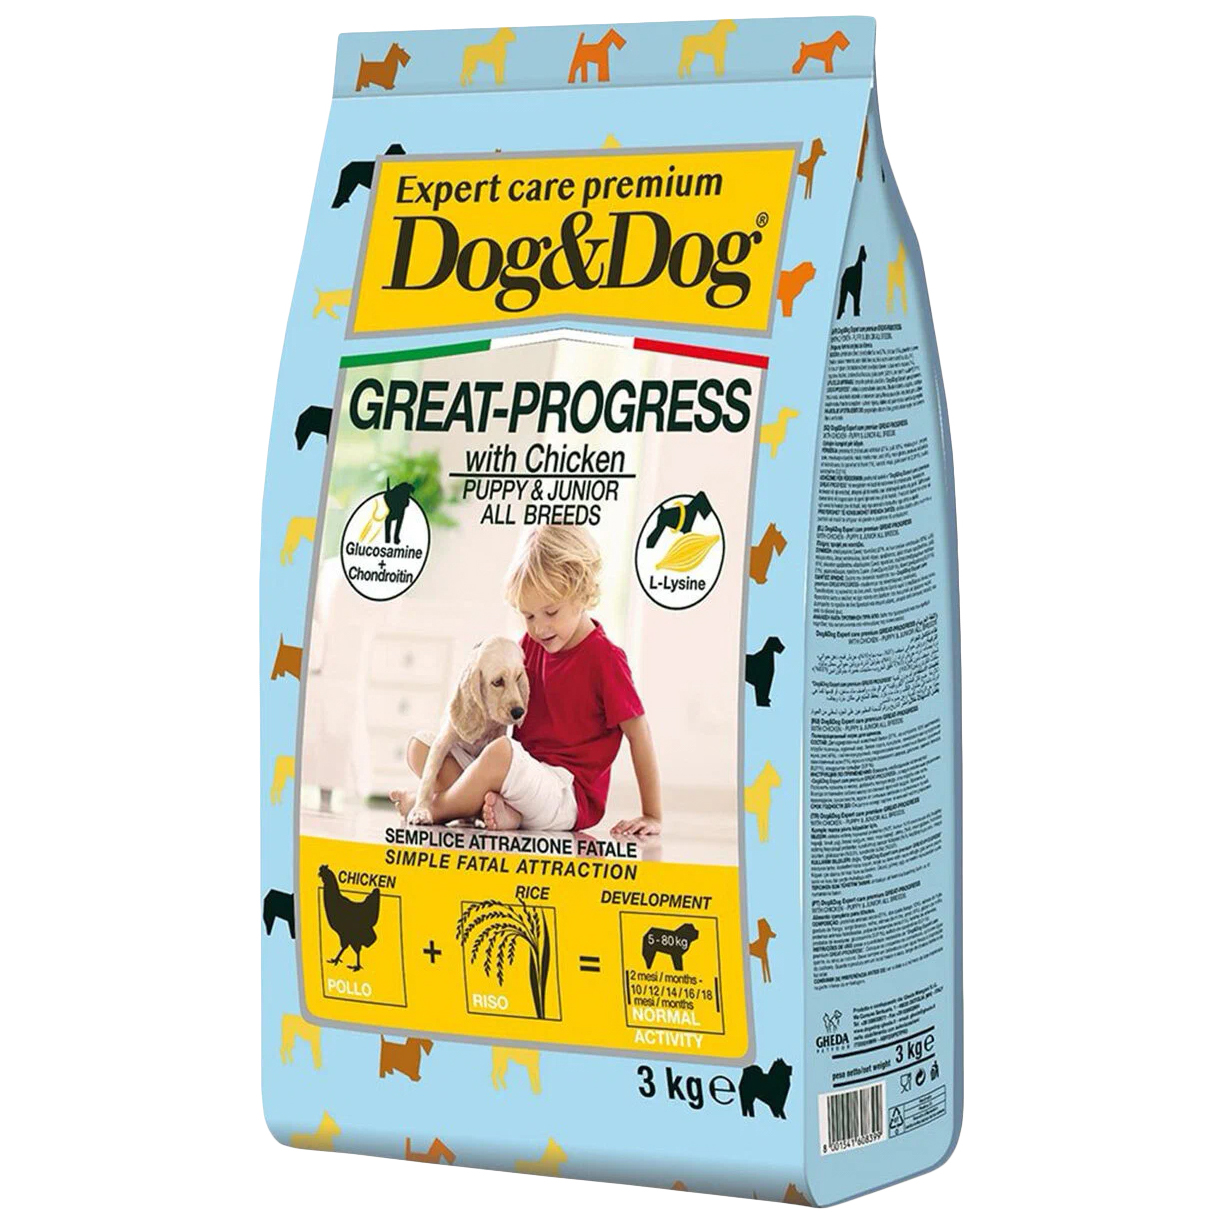 Сухой корм Dog & Dog Great-Progress для щенков, с курицей, 3 кг